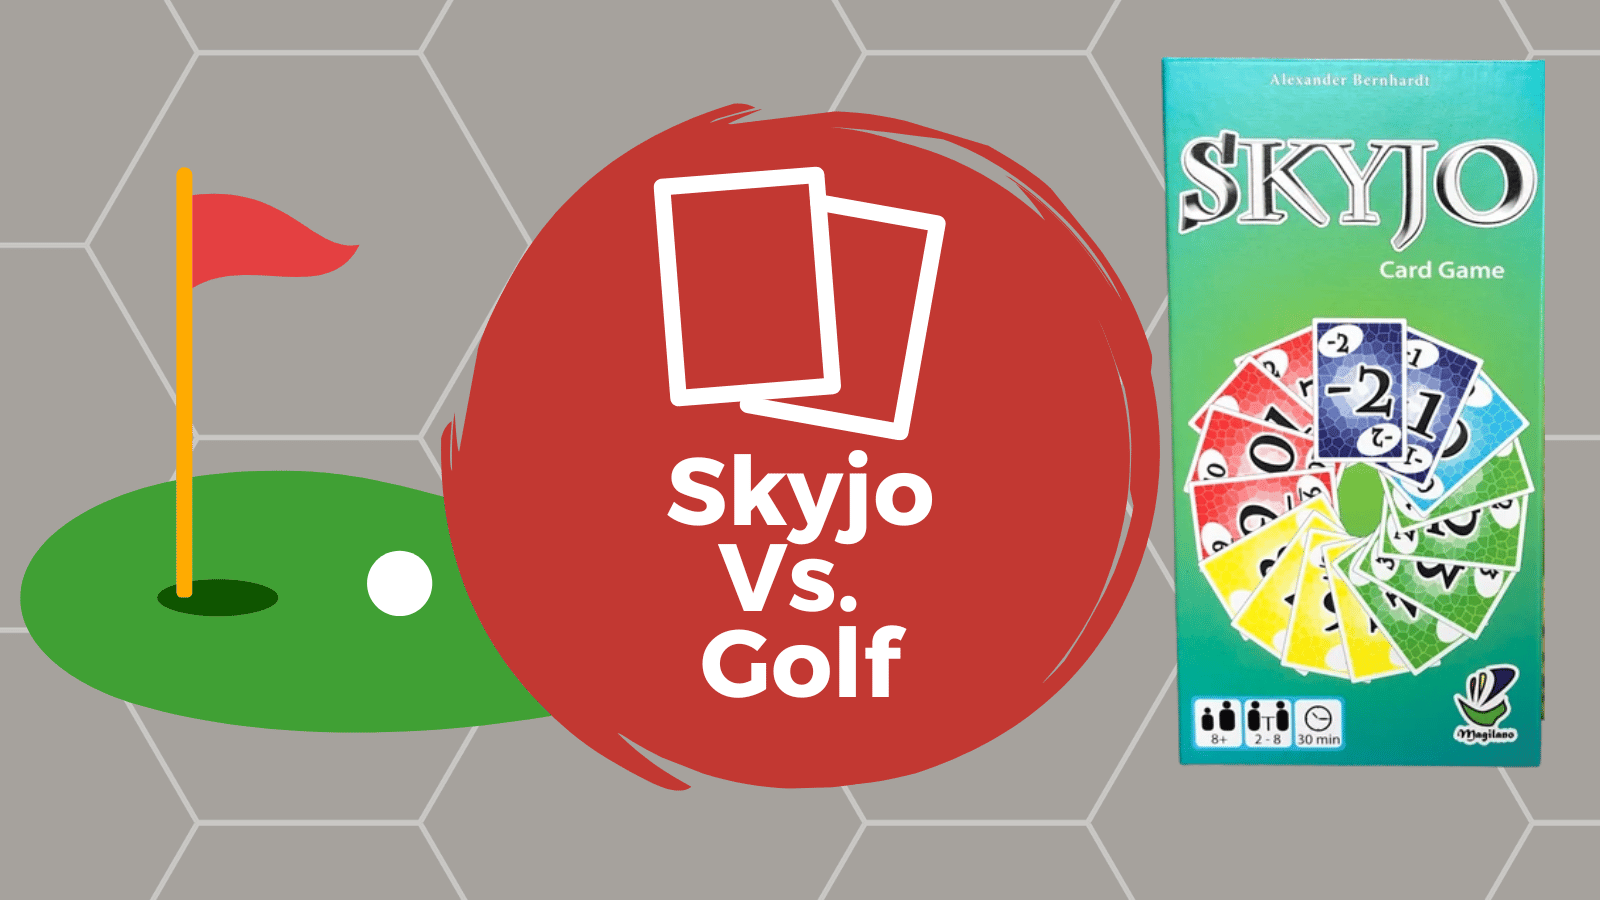 Skyjo Card Game 